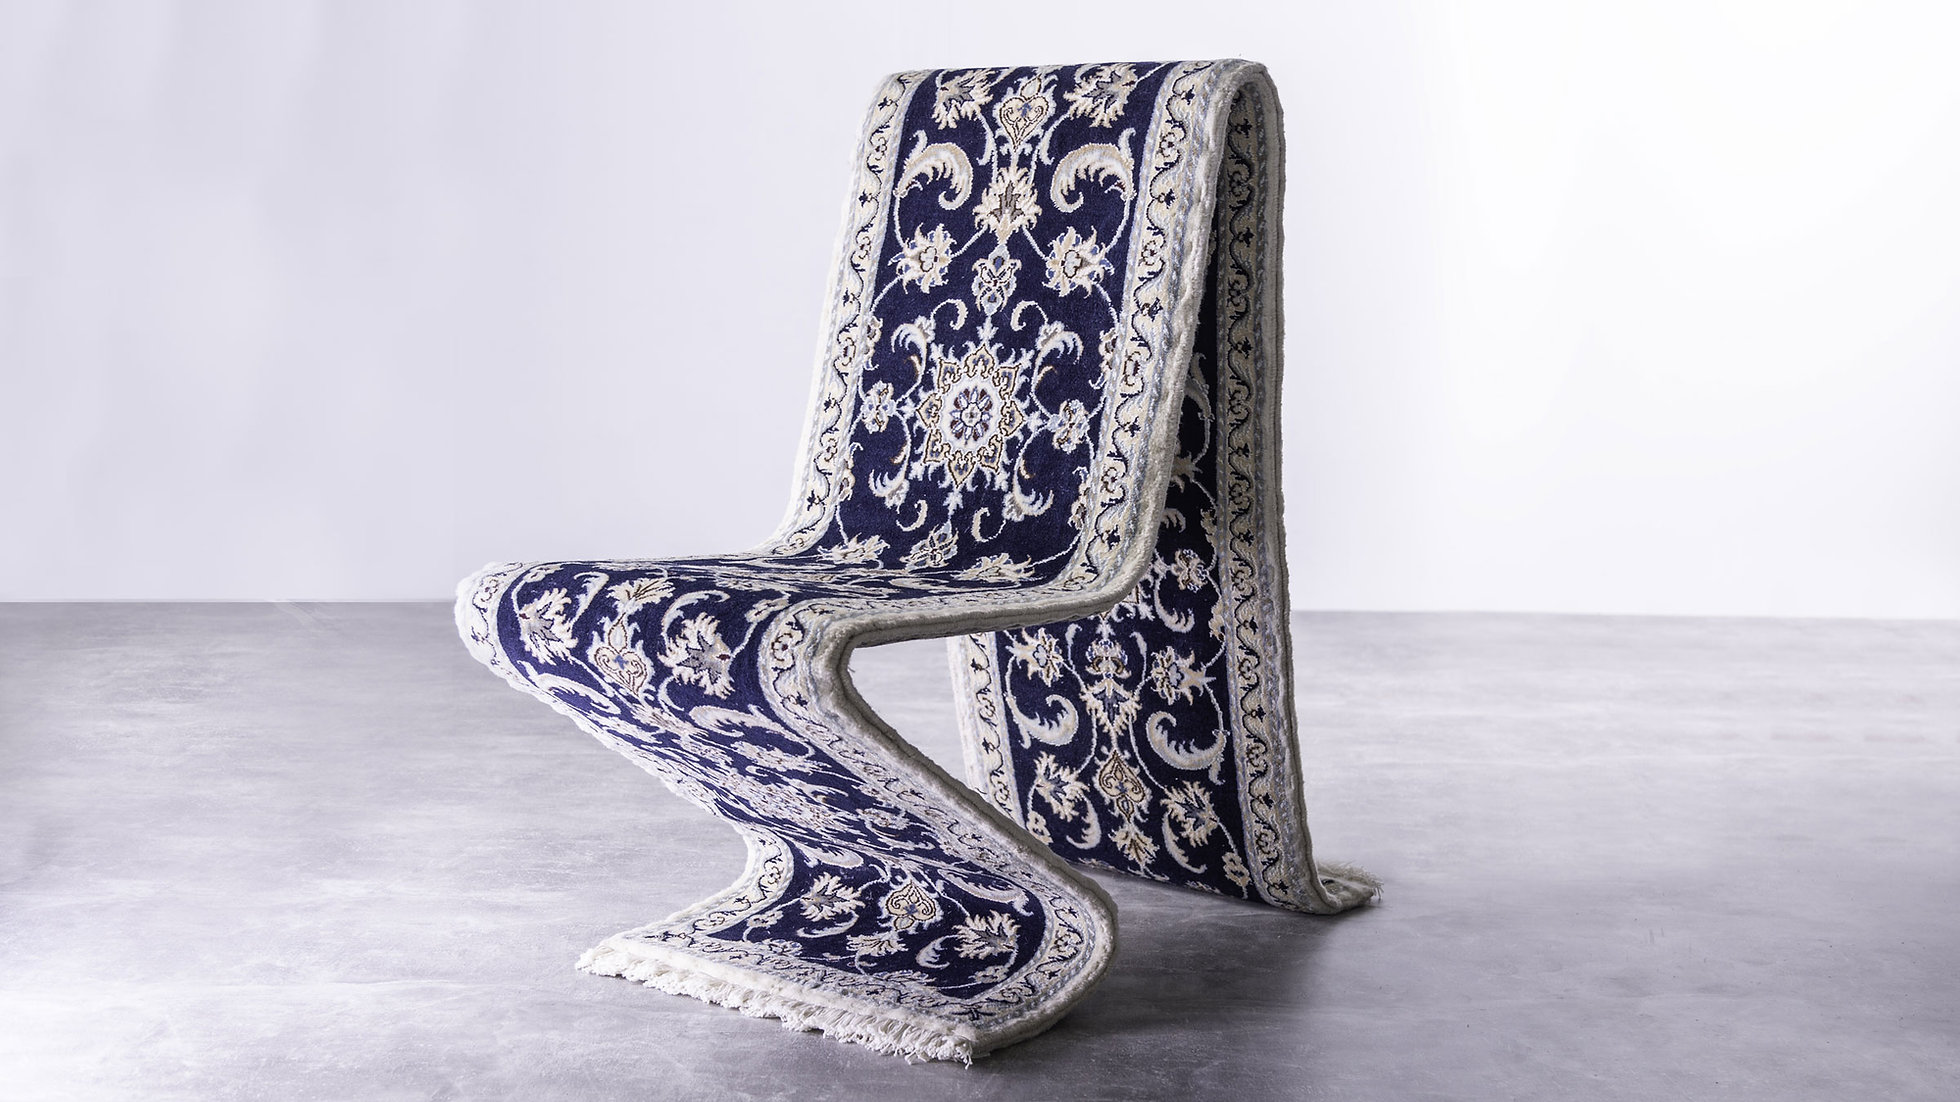 Carpet Chair